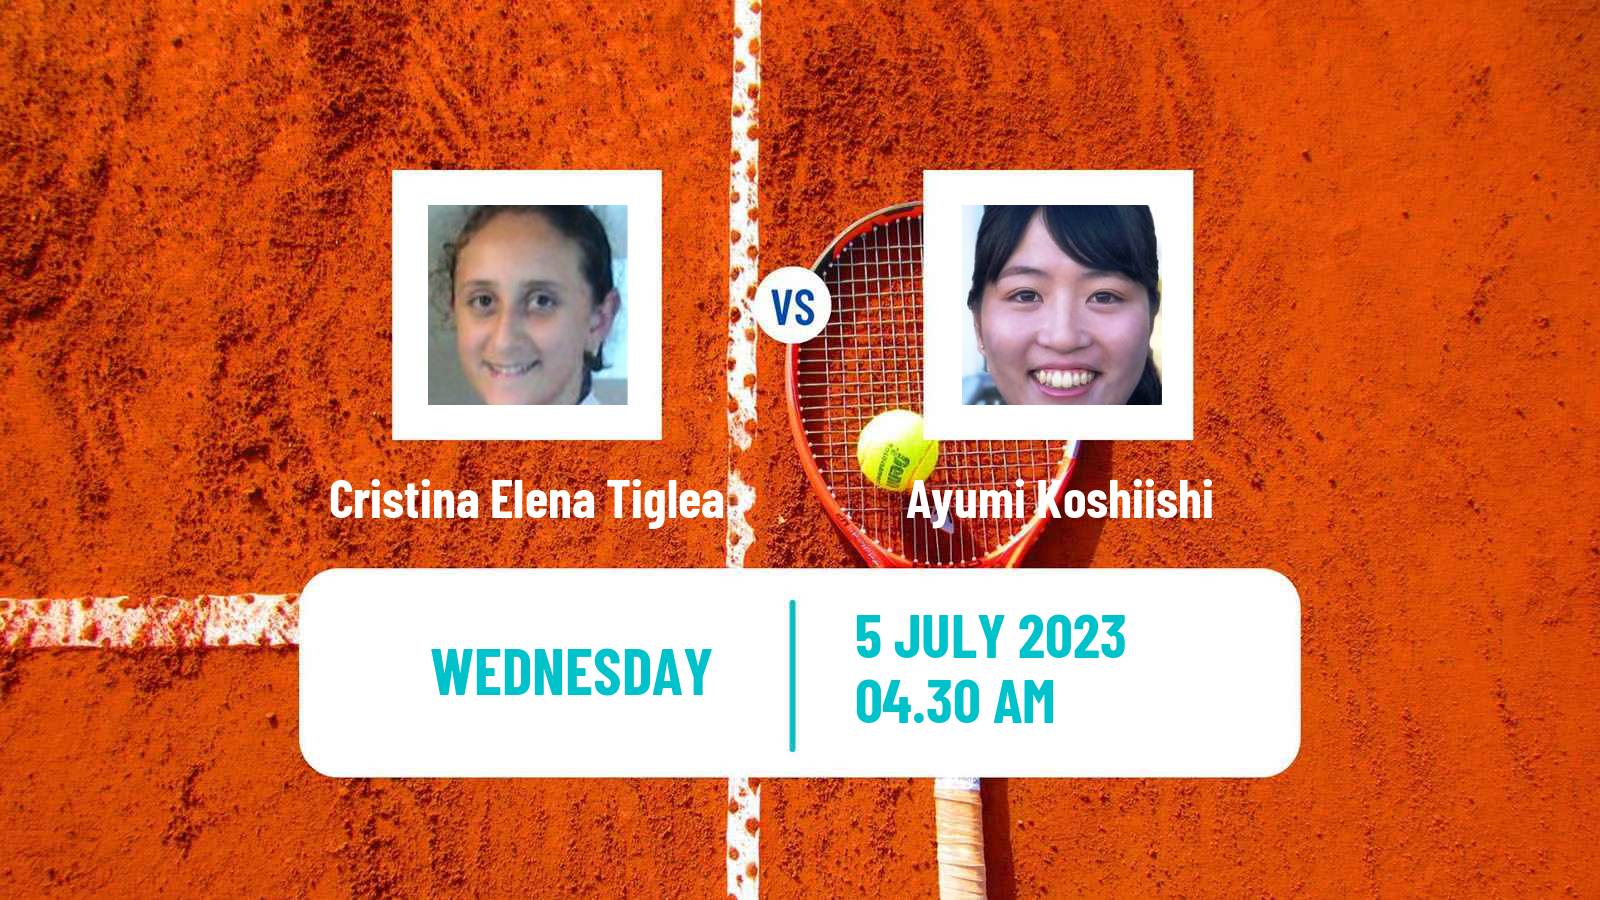 Tennis ITF W15 Monastir 22 Women Cristina Elena Tiglea - Ayumi Koshiishi